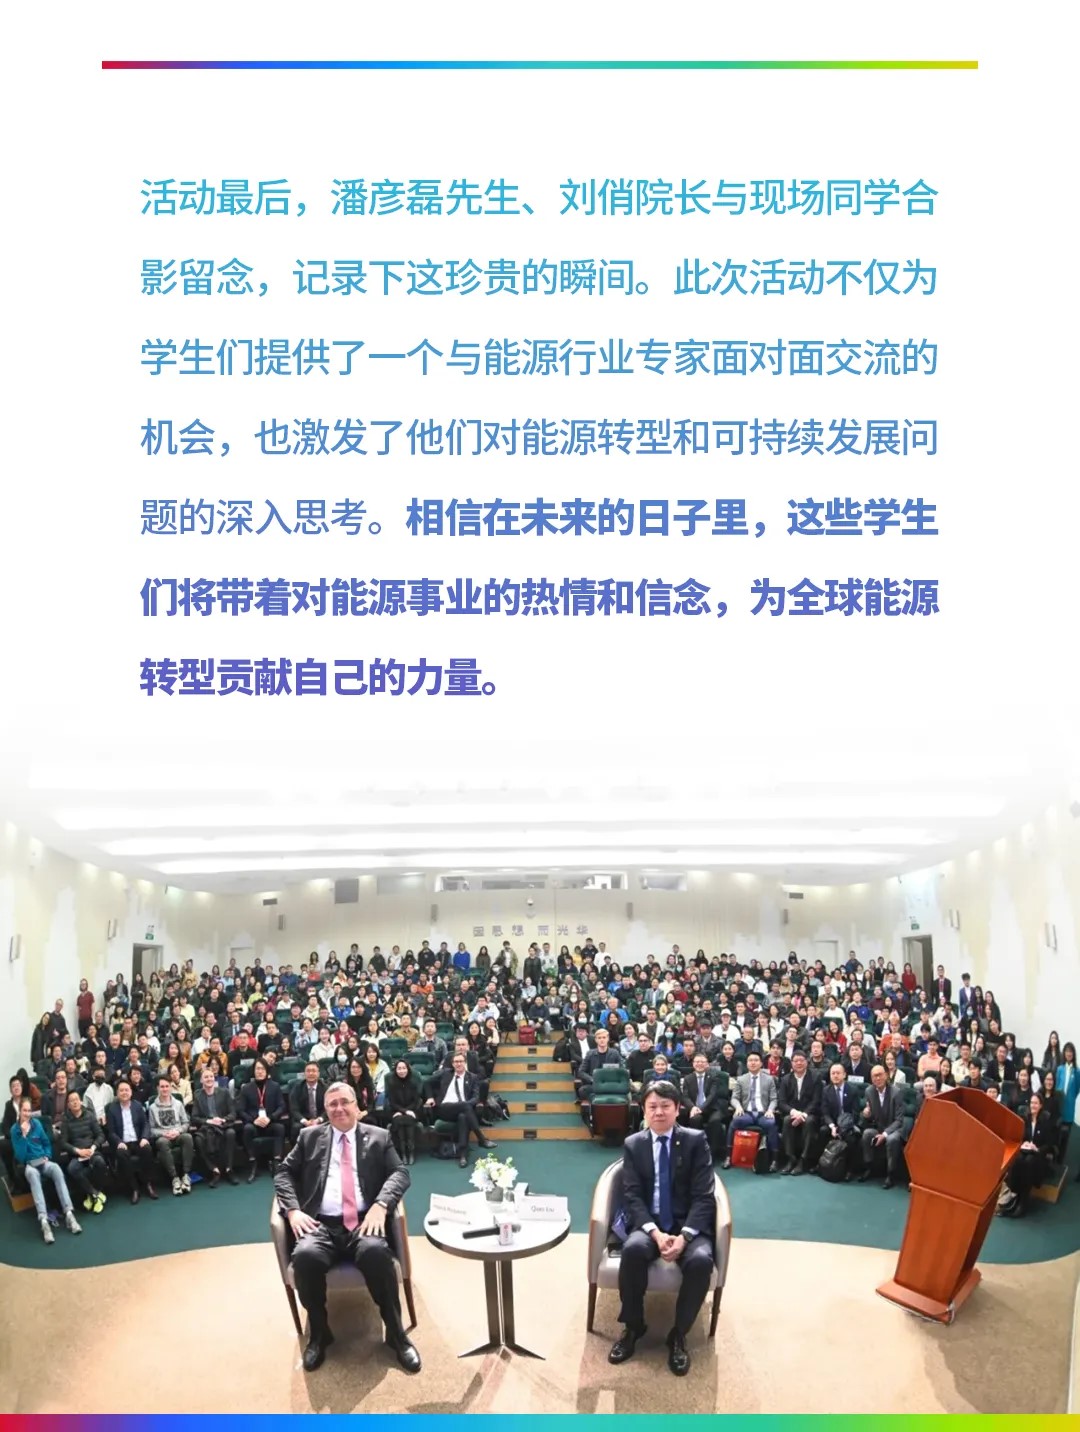 聚焦道达尔能源CEO北京大学全球能源变革主题演讲